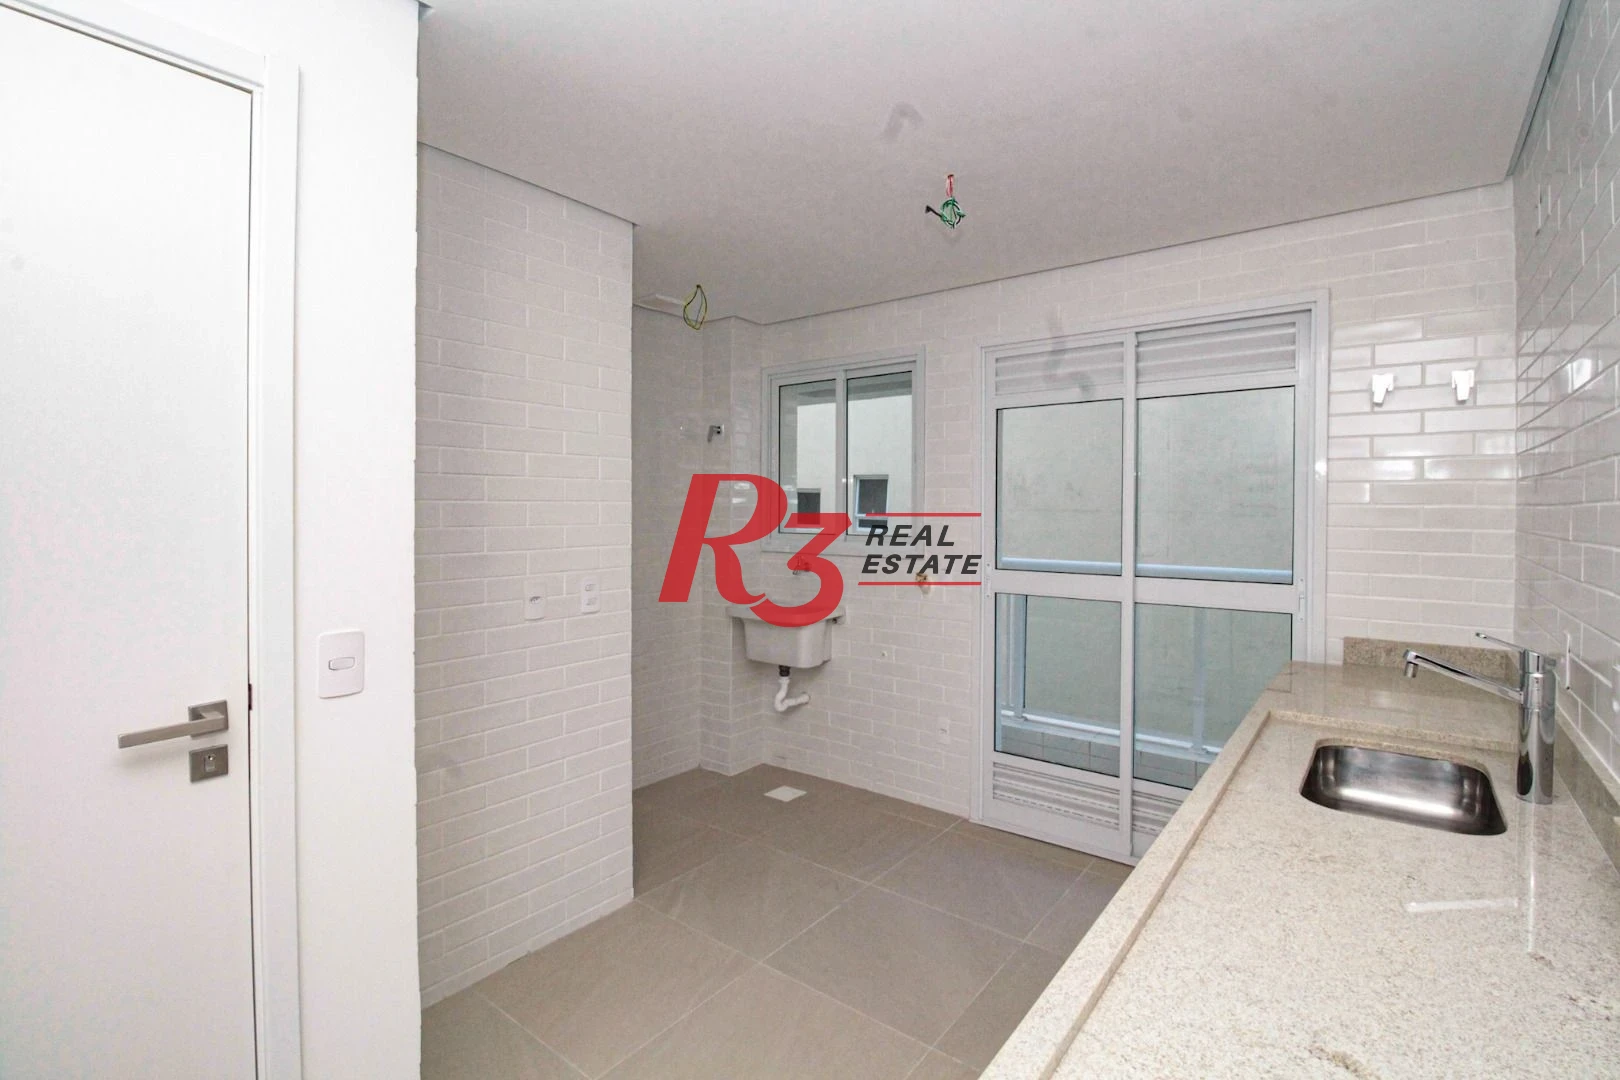 Apartamento à venda, 82 m² por R$ 825.000,00 - Aparecida - Santos/SP